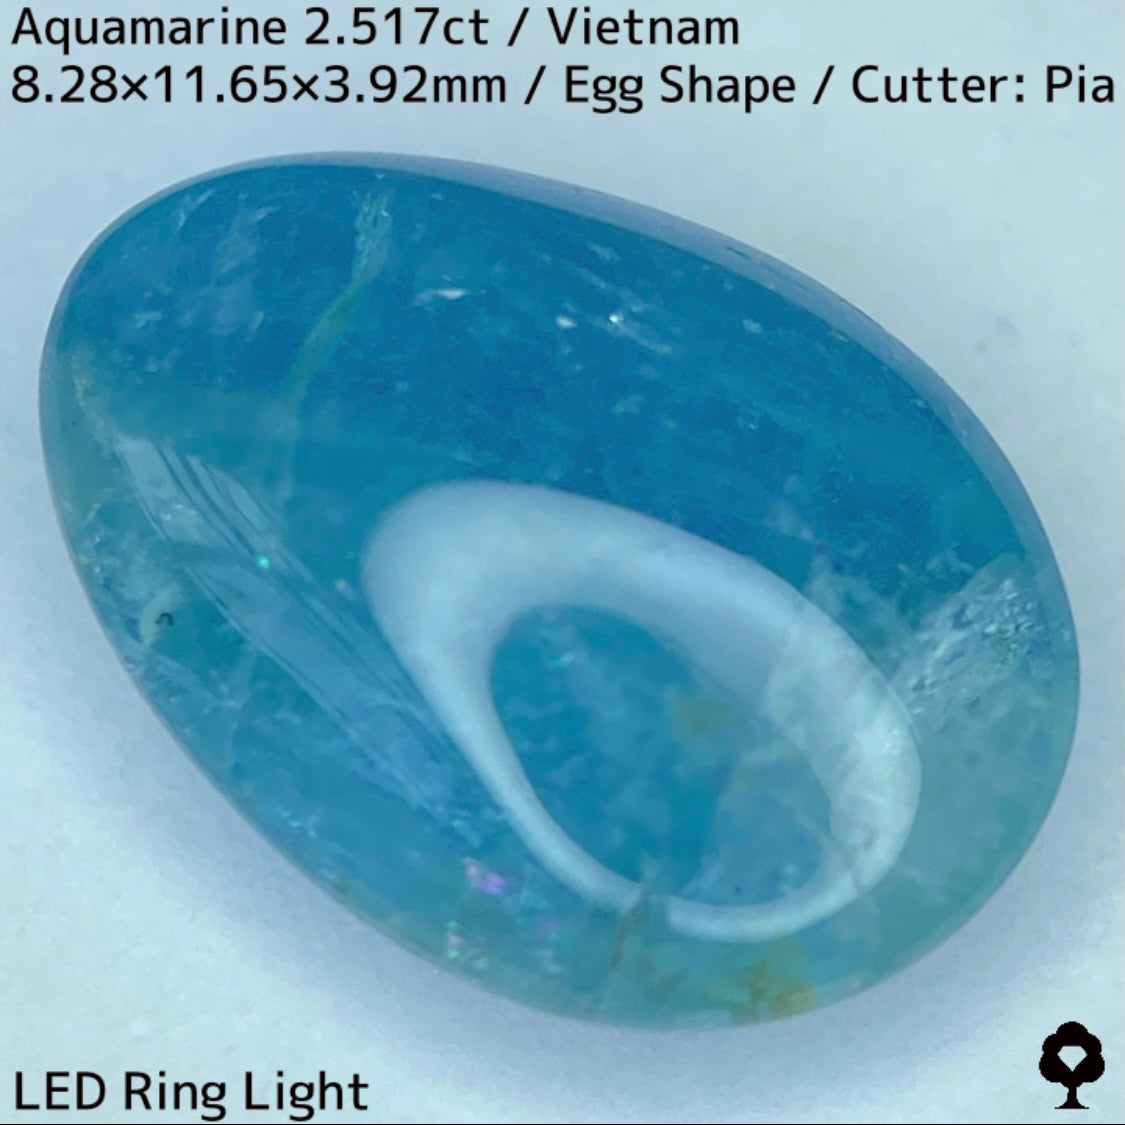 ベトナム産アクアマリン2.517ct★可愛い卵形カボションに仕上げた虹がチラつくグリニッシュブルー